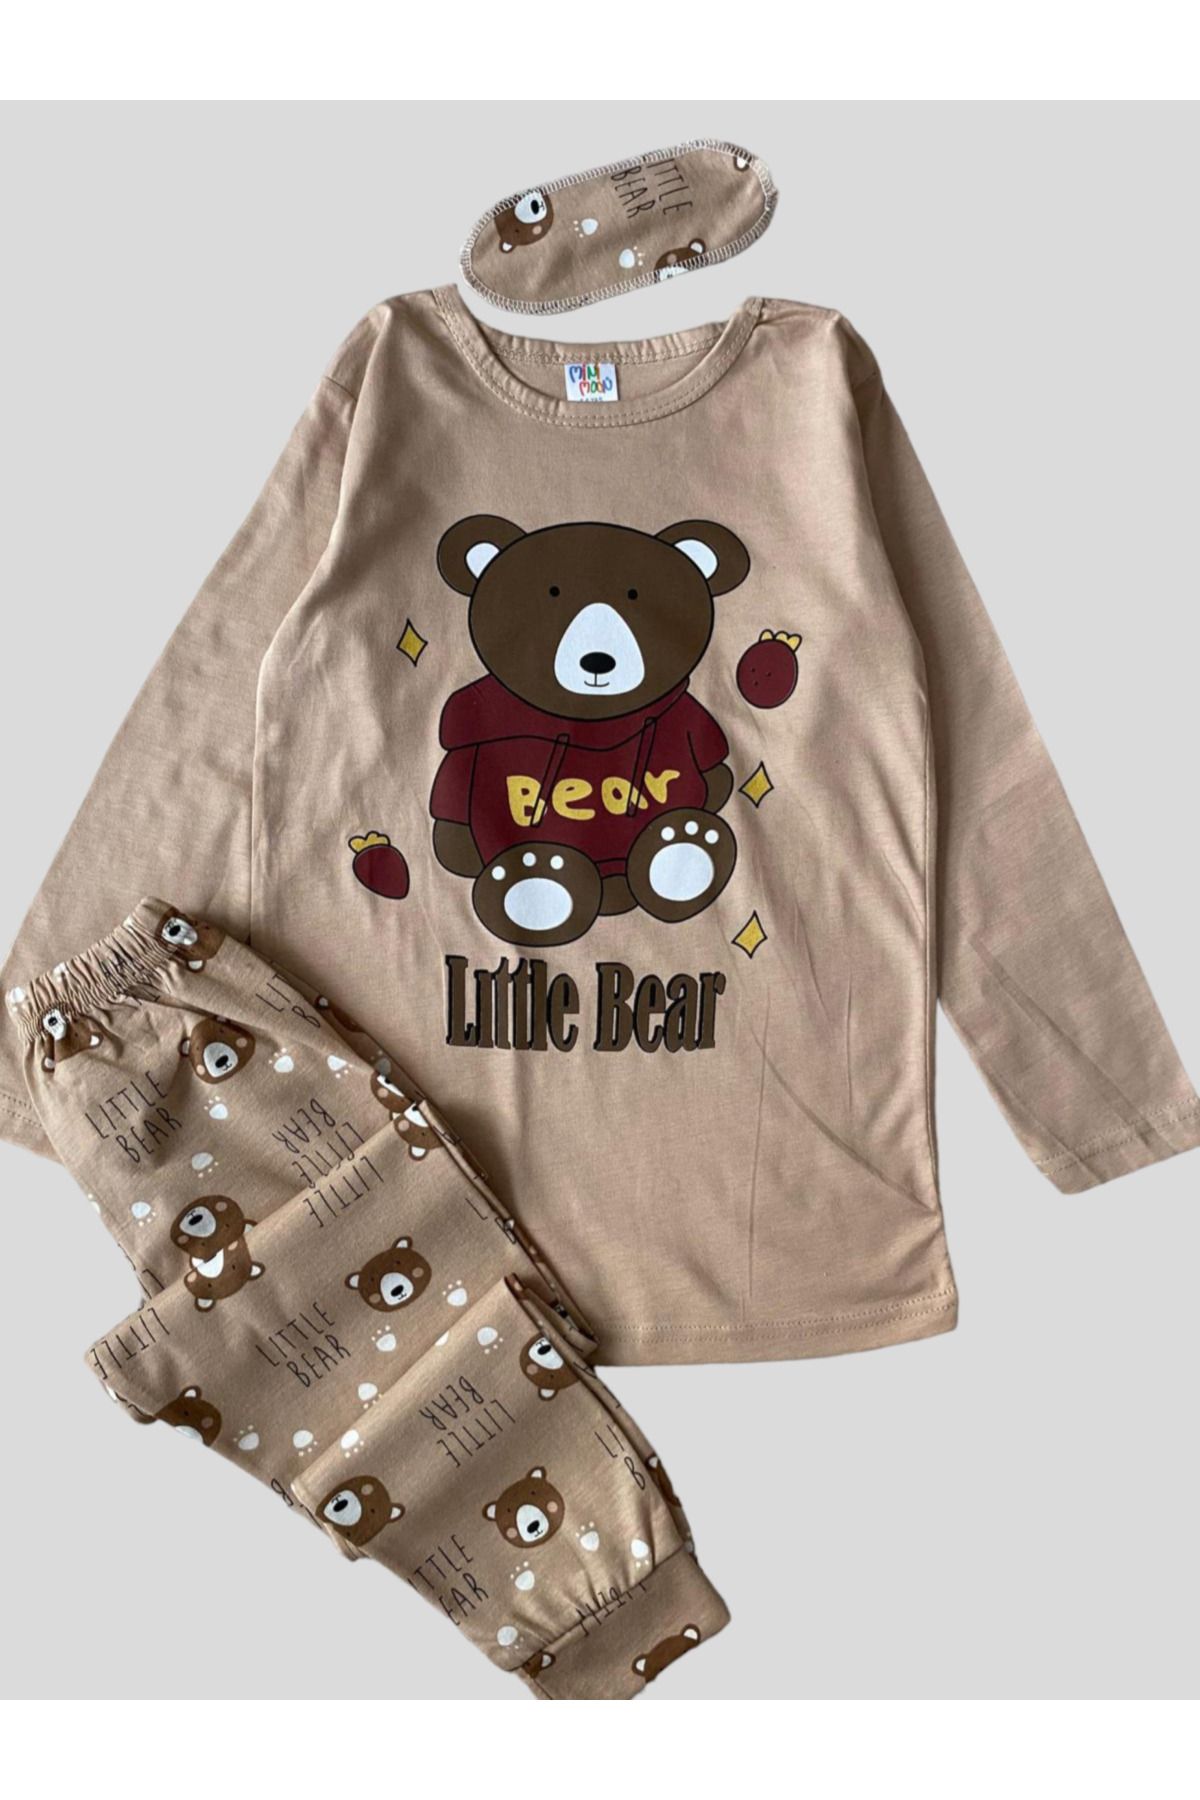 Minimoon Alişş Kids Kız Çocuk Pamuklu Uyku Bantlı Bear Baskılı Pijama Takımı